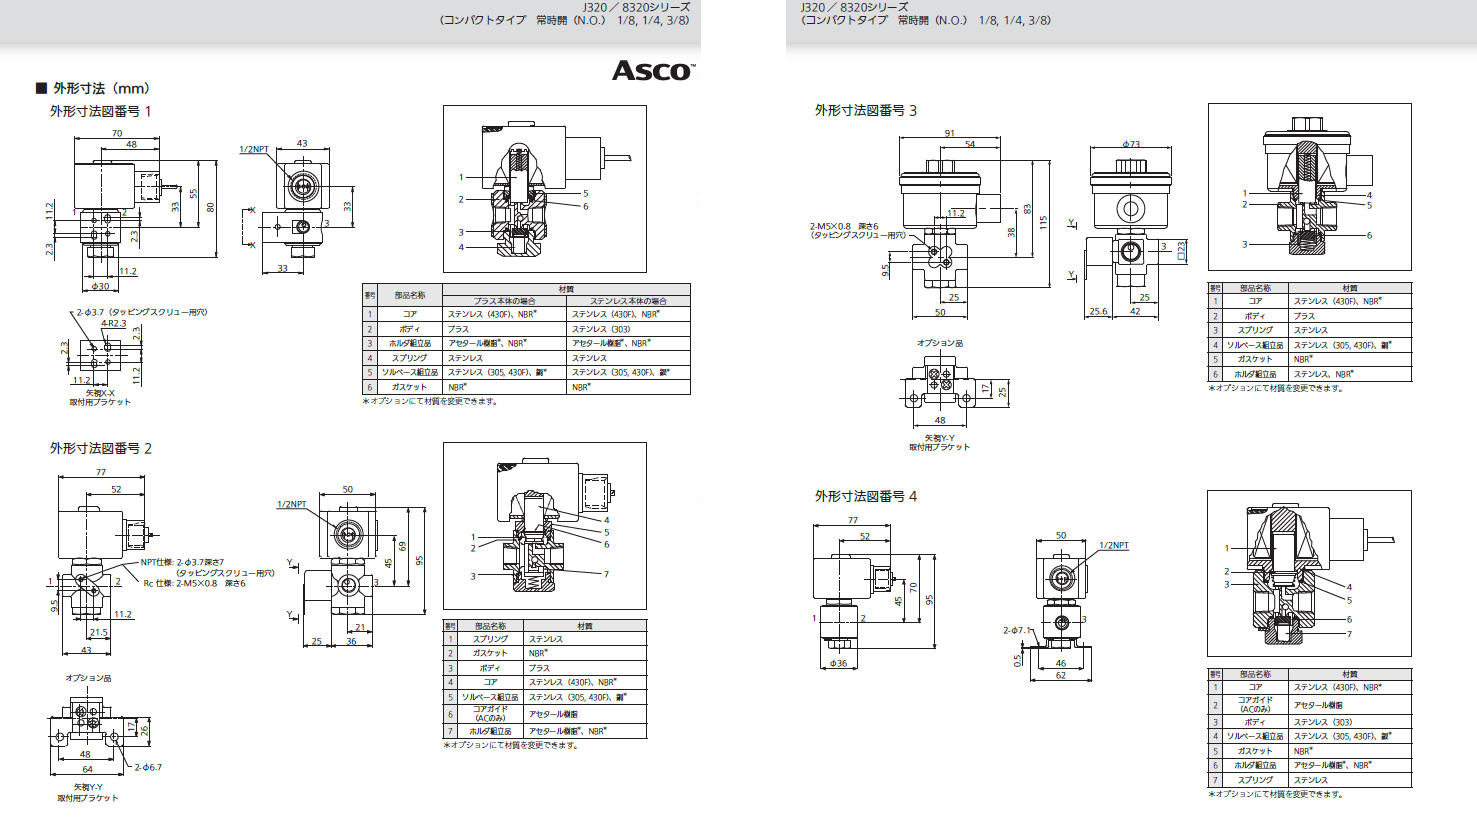 よいしな 3方向電磁弁 NO 配管1/4 日本アスコ㈱ ASCO